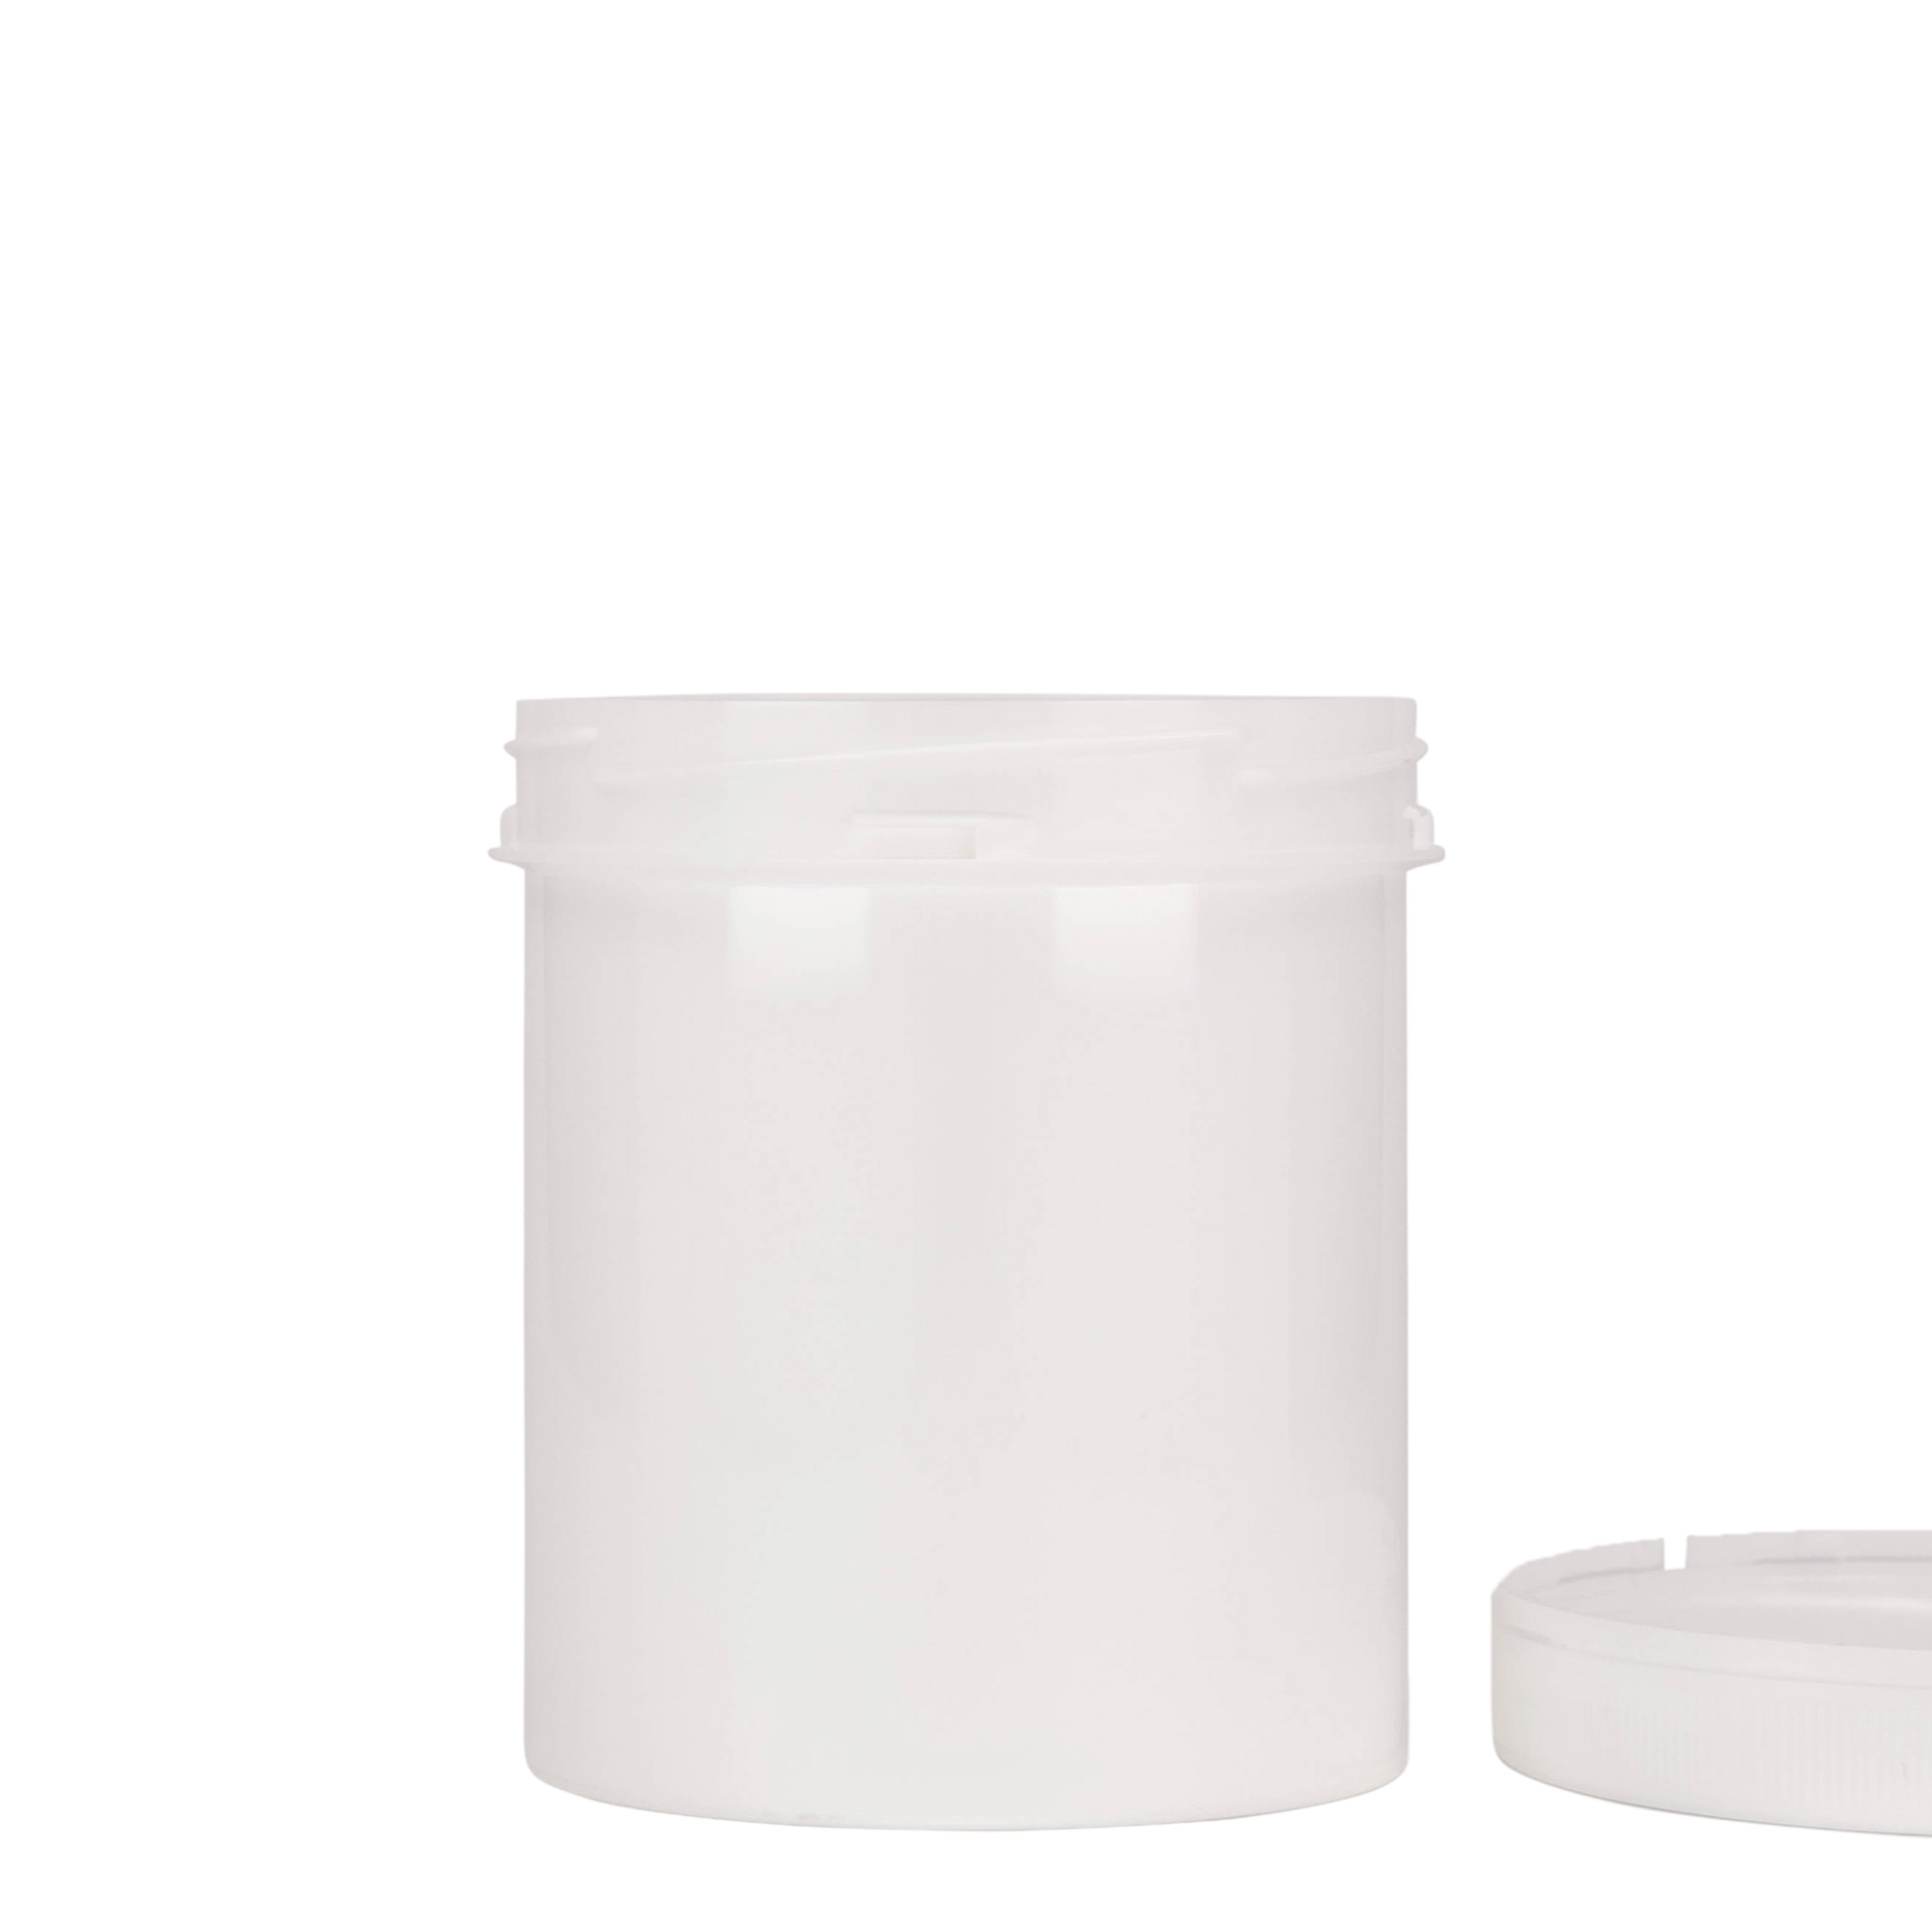 500 ml plastic jar 'Securilock', PP, white, closure: screw cap